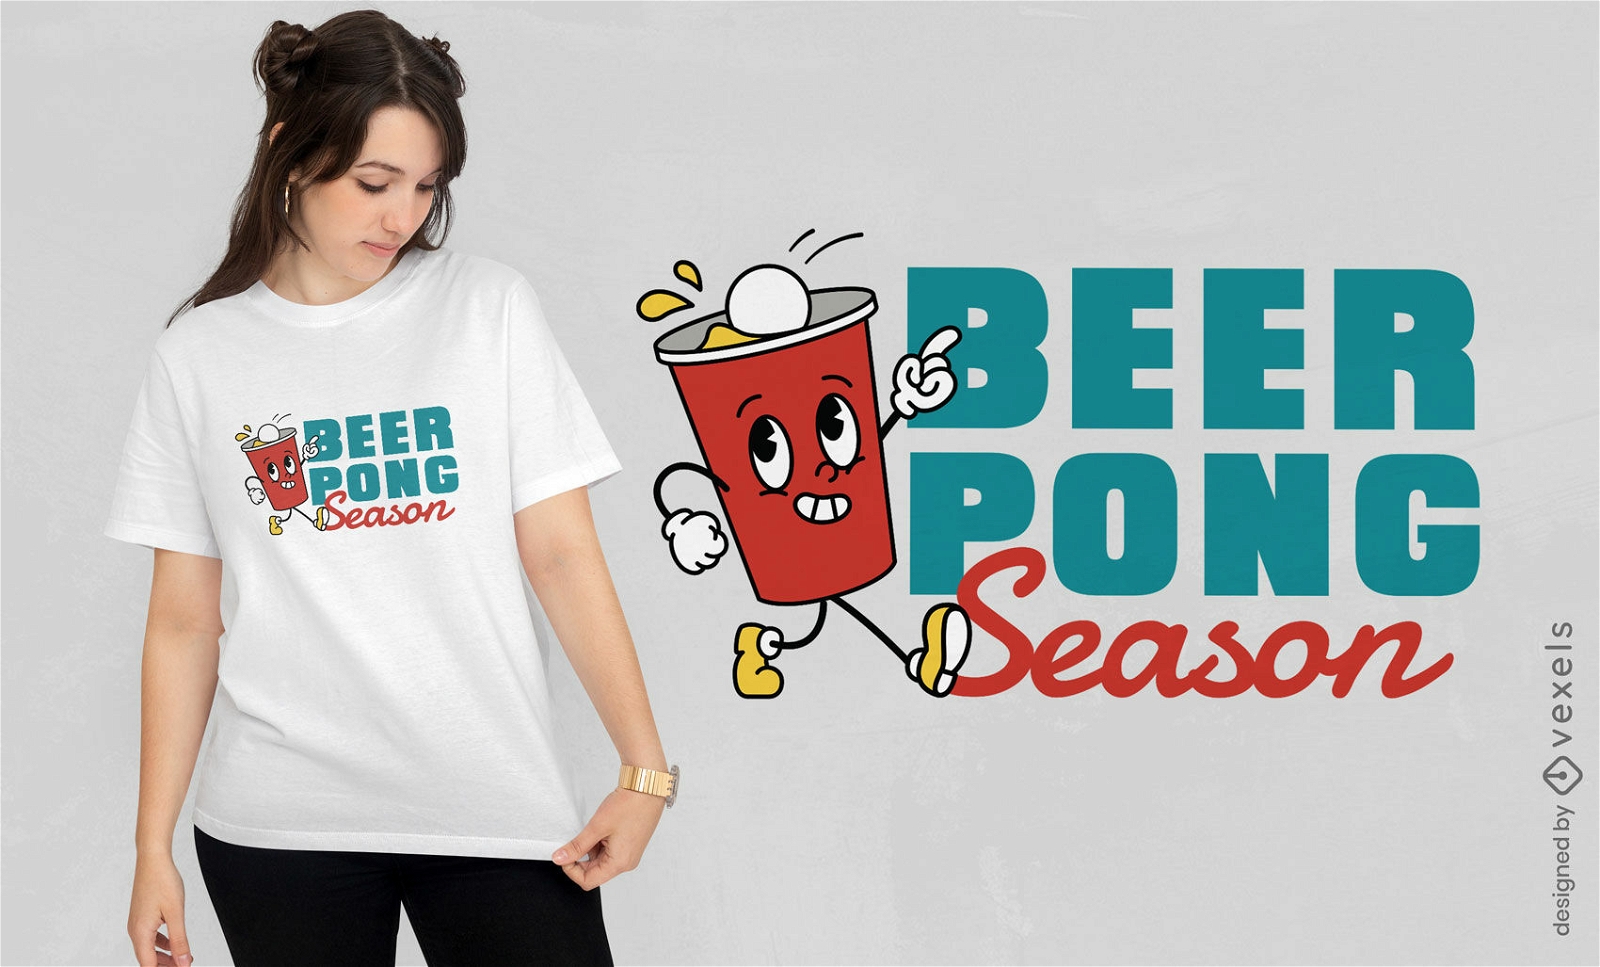 Dise?o de camiseta divertida de la temporada de beer pong.